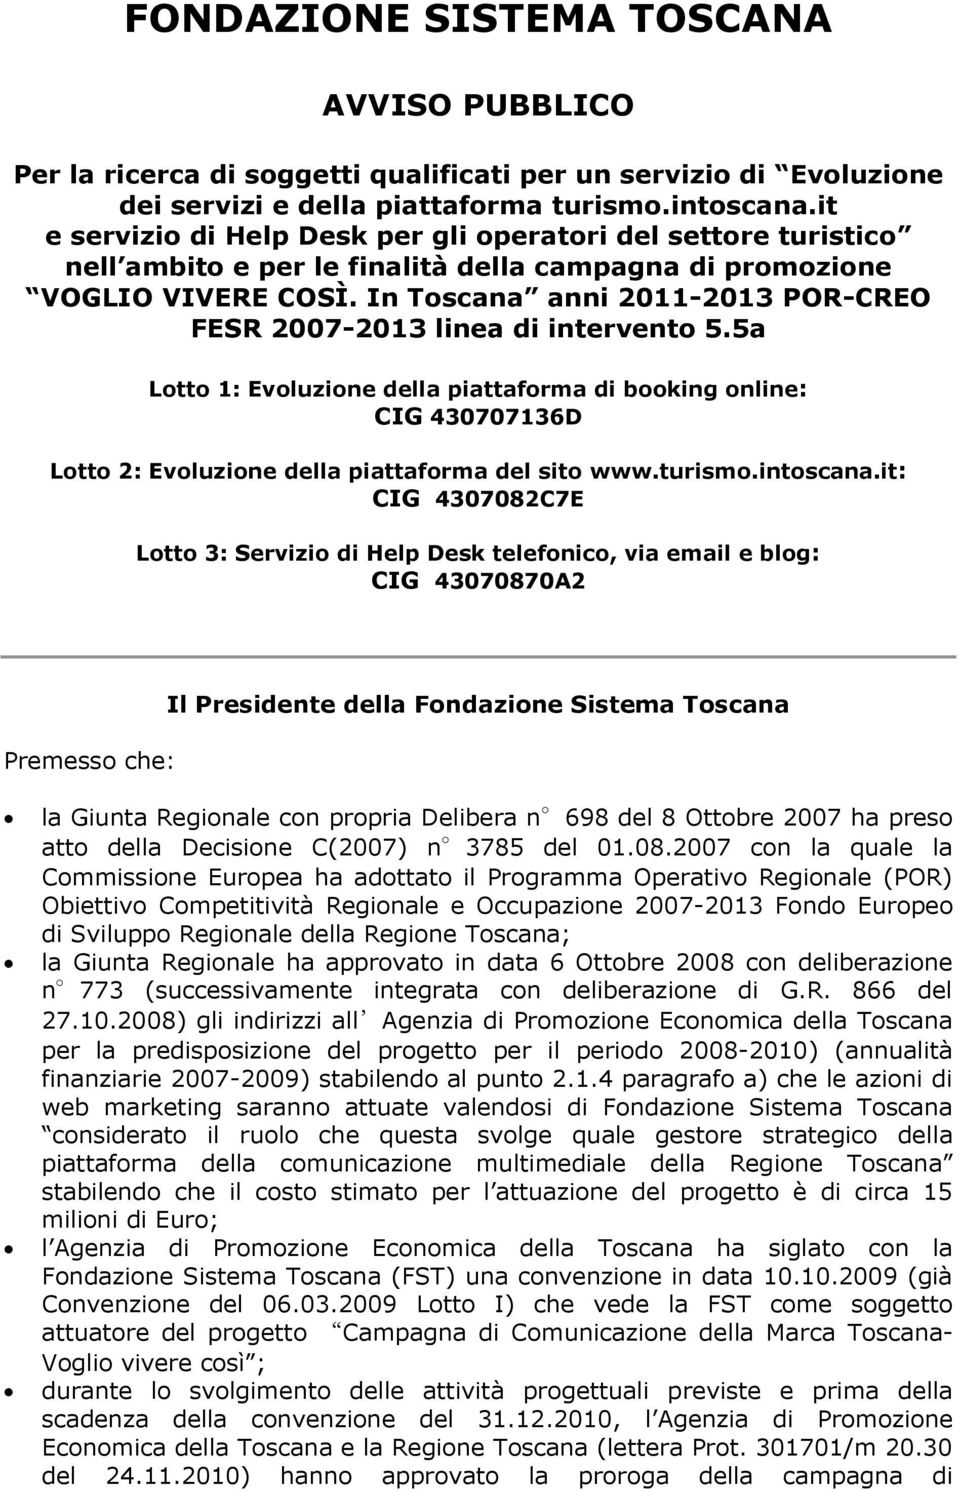 In Toscana anni 2011-2013 POR-CREO FESR 2007-2013 linea di intervento 5.5a Lotto 1: Evoluzione della piattaforma di booking online: CIG 430707136D Lotto 2: Evoluzione della piattaforma del sito www.